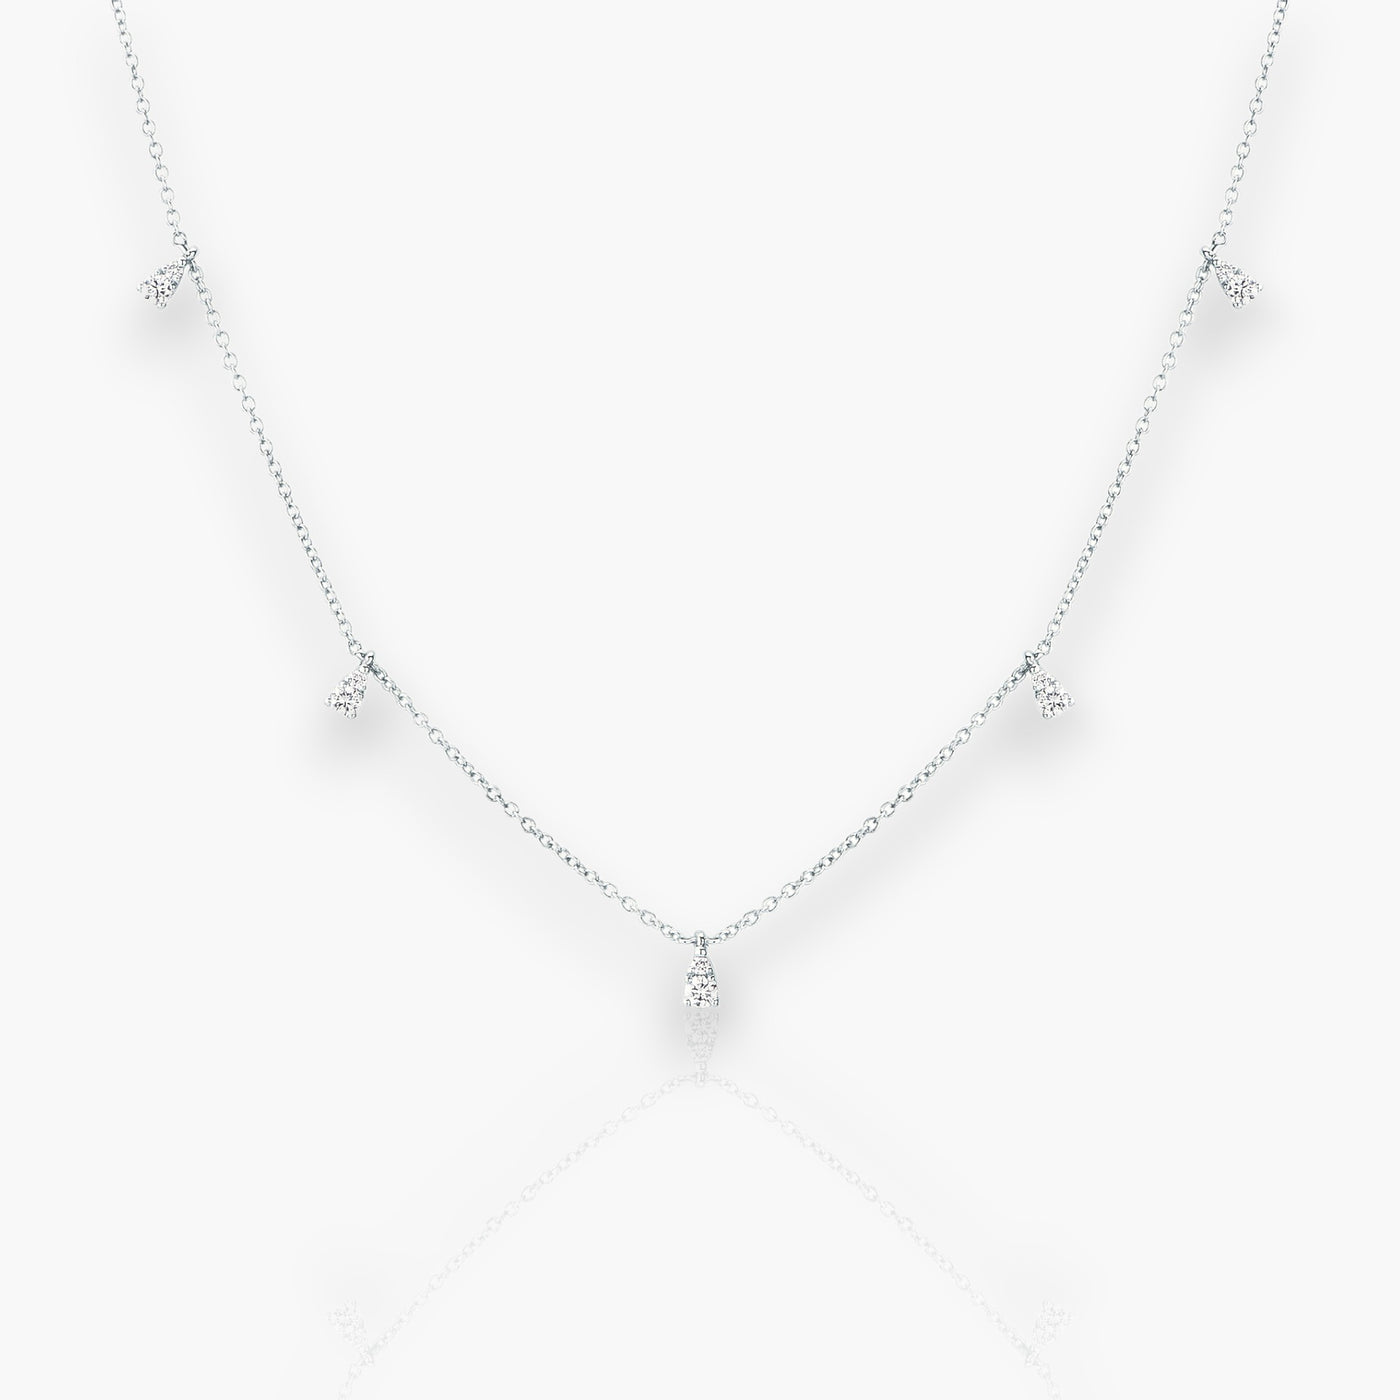 18K Halskette aus Weißgold mit 5 Diamanten/Edelsteinen.